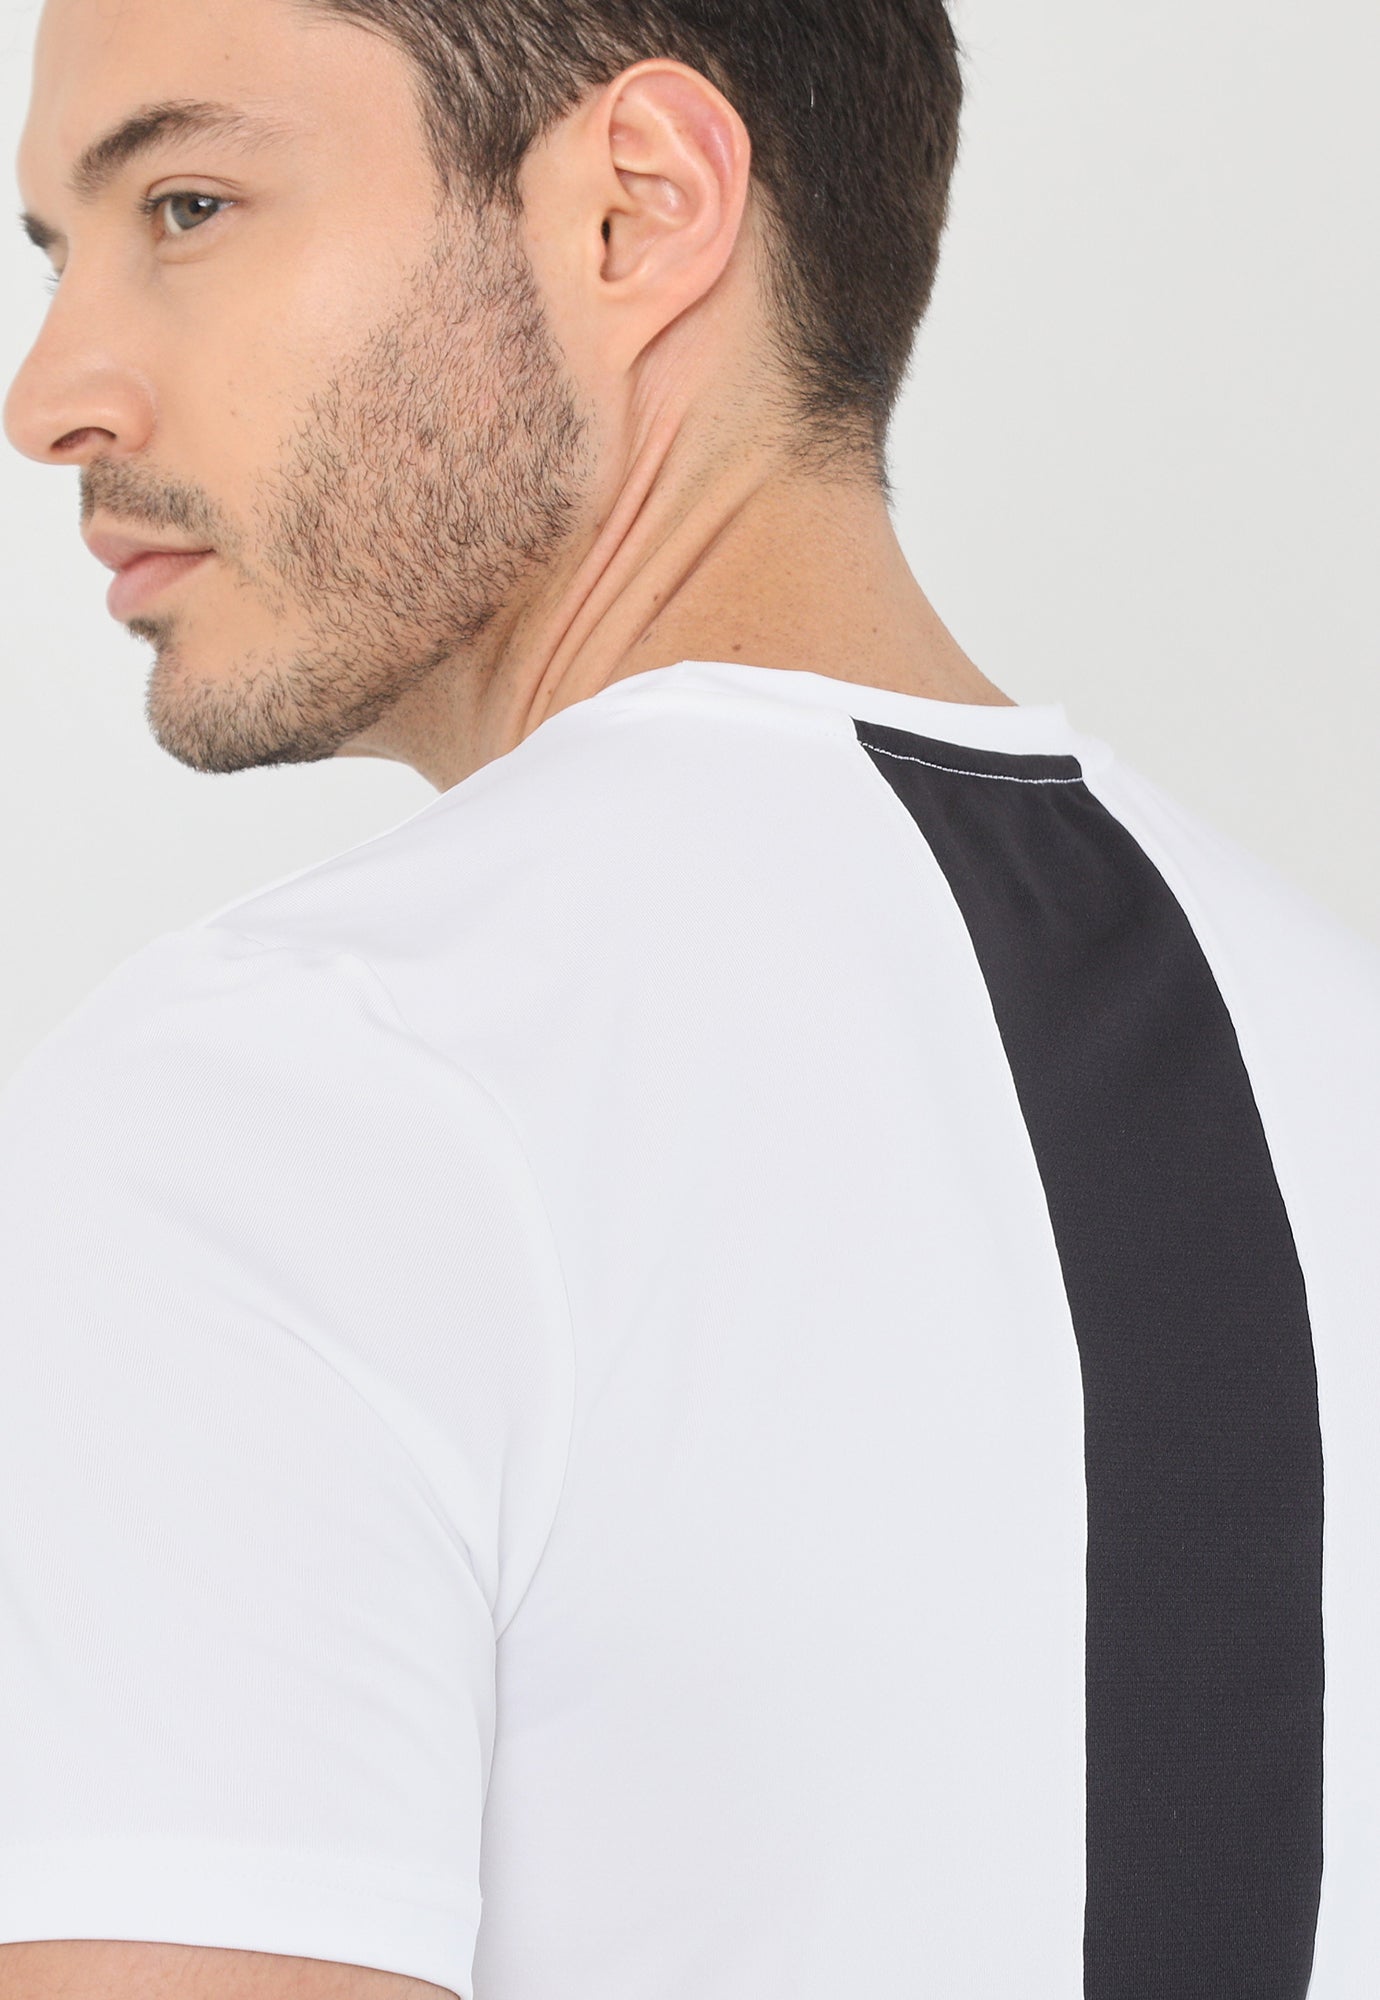 Camiseta deportiva blanco hueso manga corta, bloque en centro espalda y cuello redondo para hombre